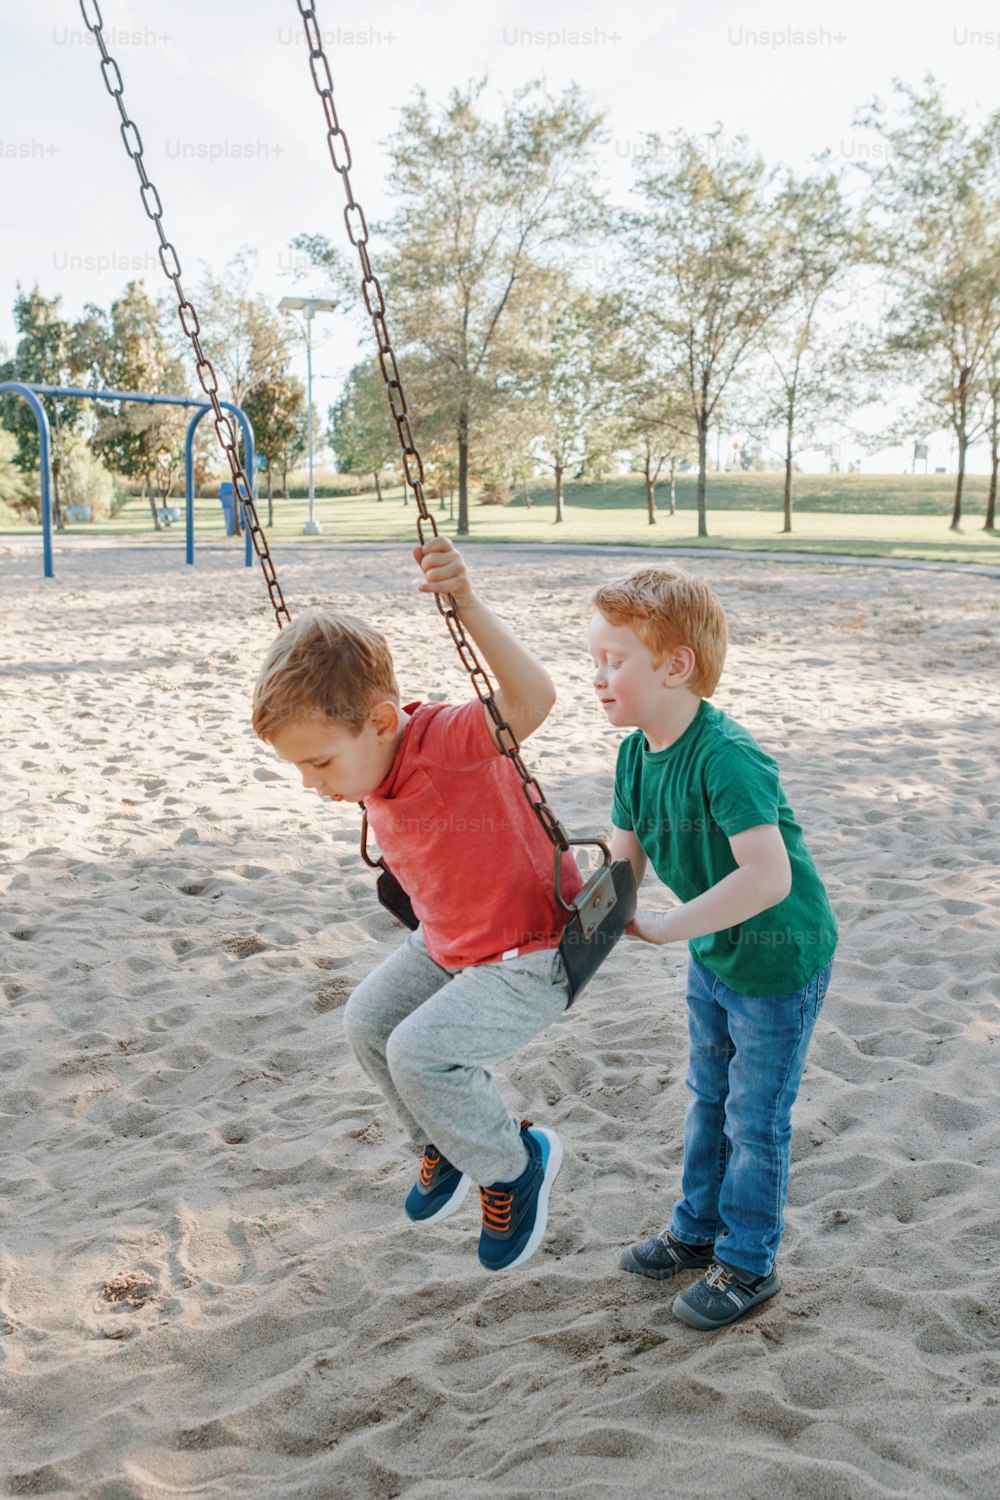 Felizes sorridentes pequenos amigos meninos da pré-escola balançando em balanços no playground do lado de fora no dia de verão. Conceito de estilo de vida feliz na infância. Atividade sazonal ao ar livre para crianças.